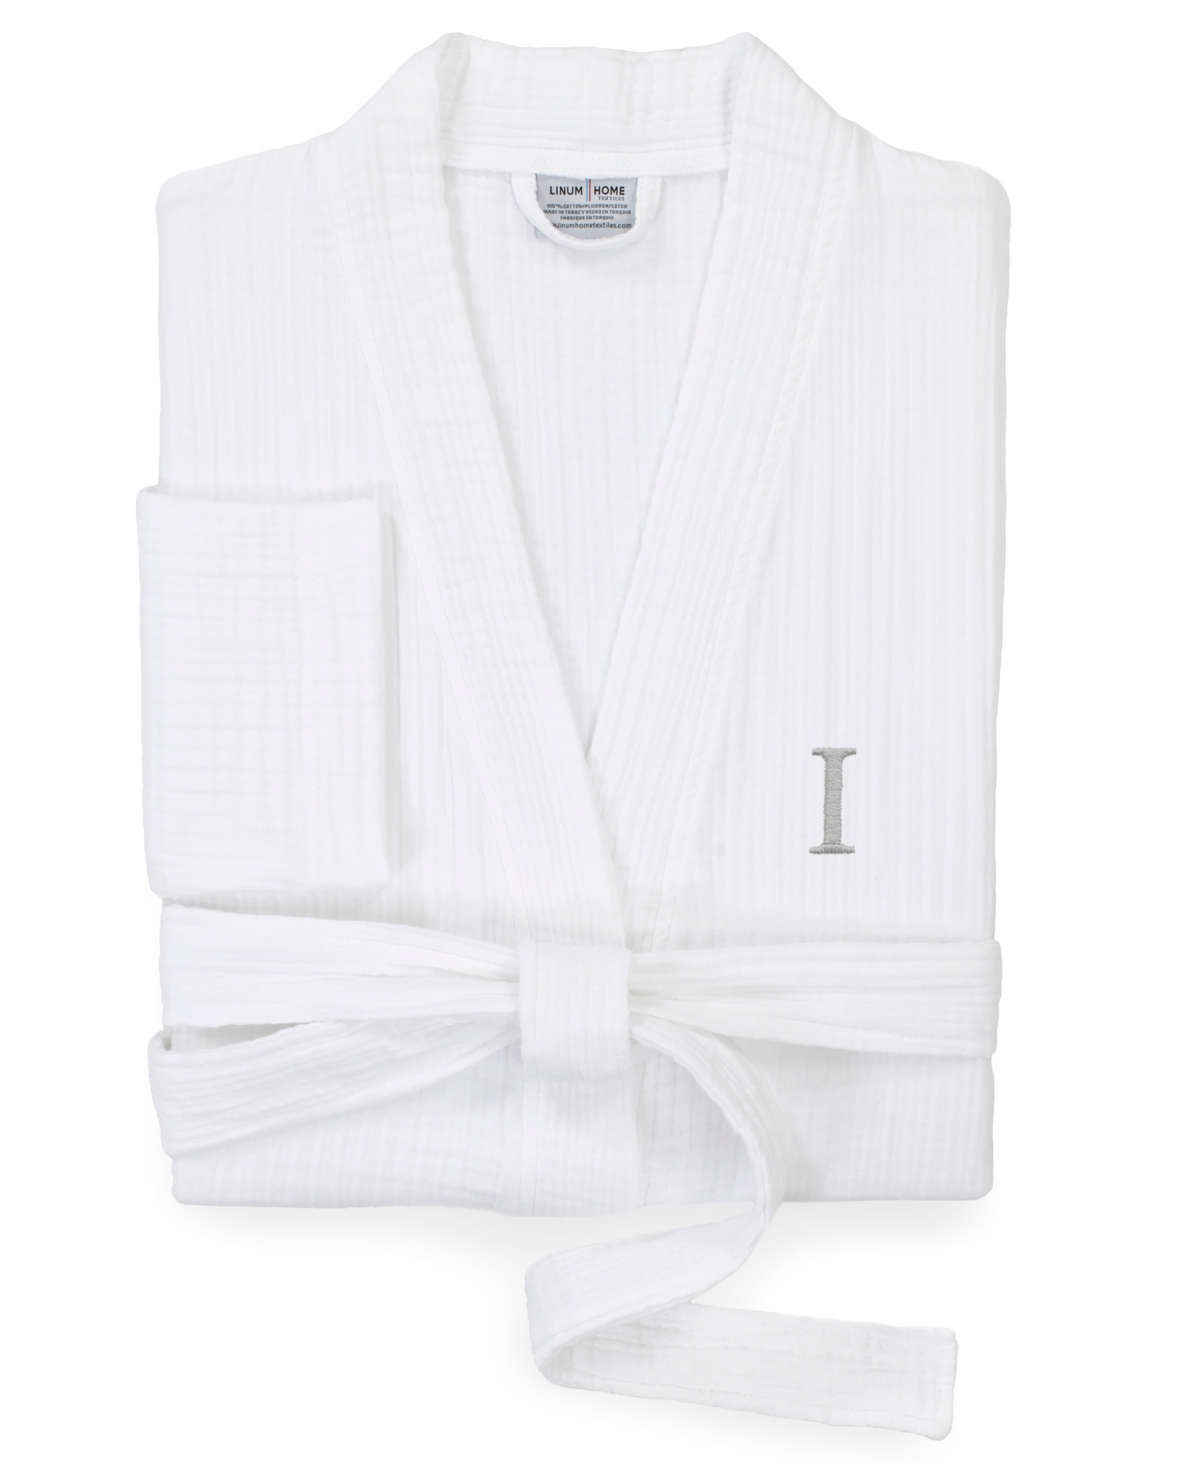 Smyrna Personalized Hotel/Spa Luxury Robes - White-Z